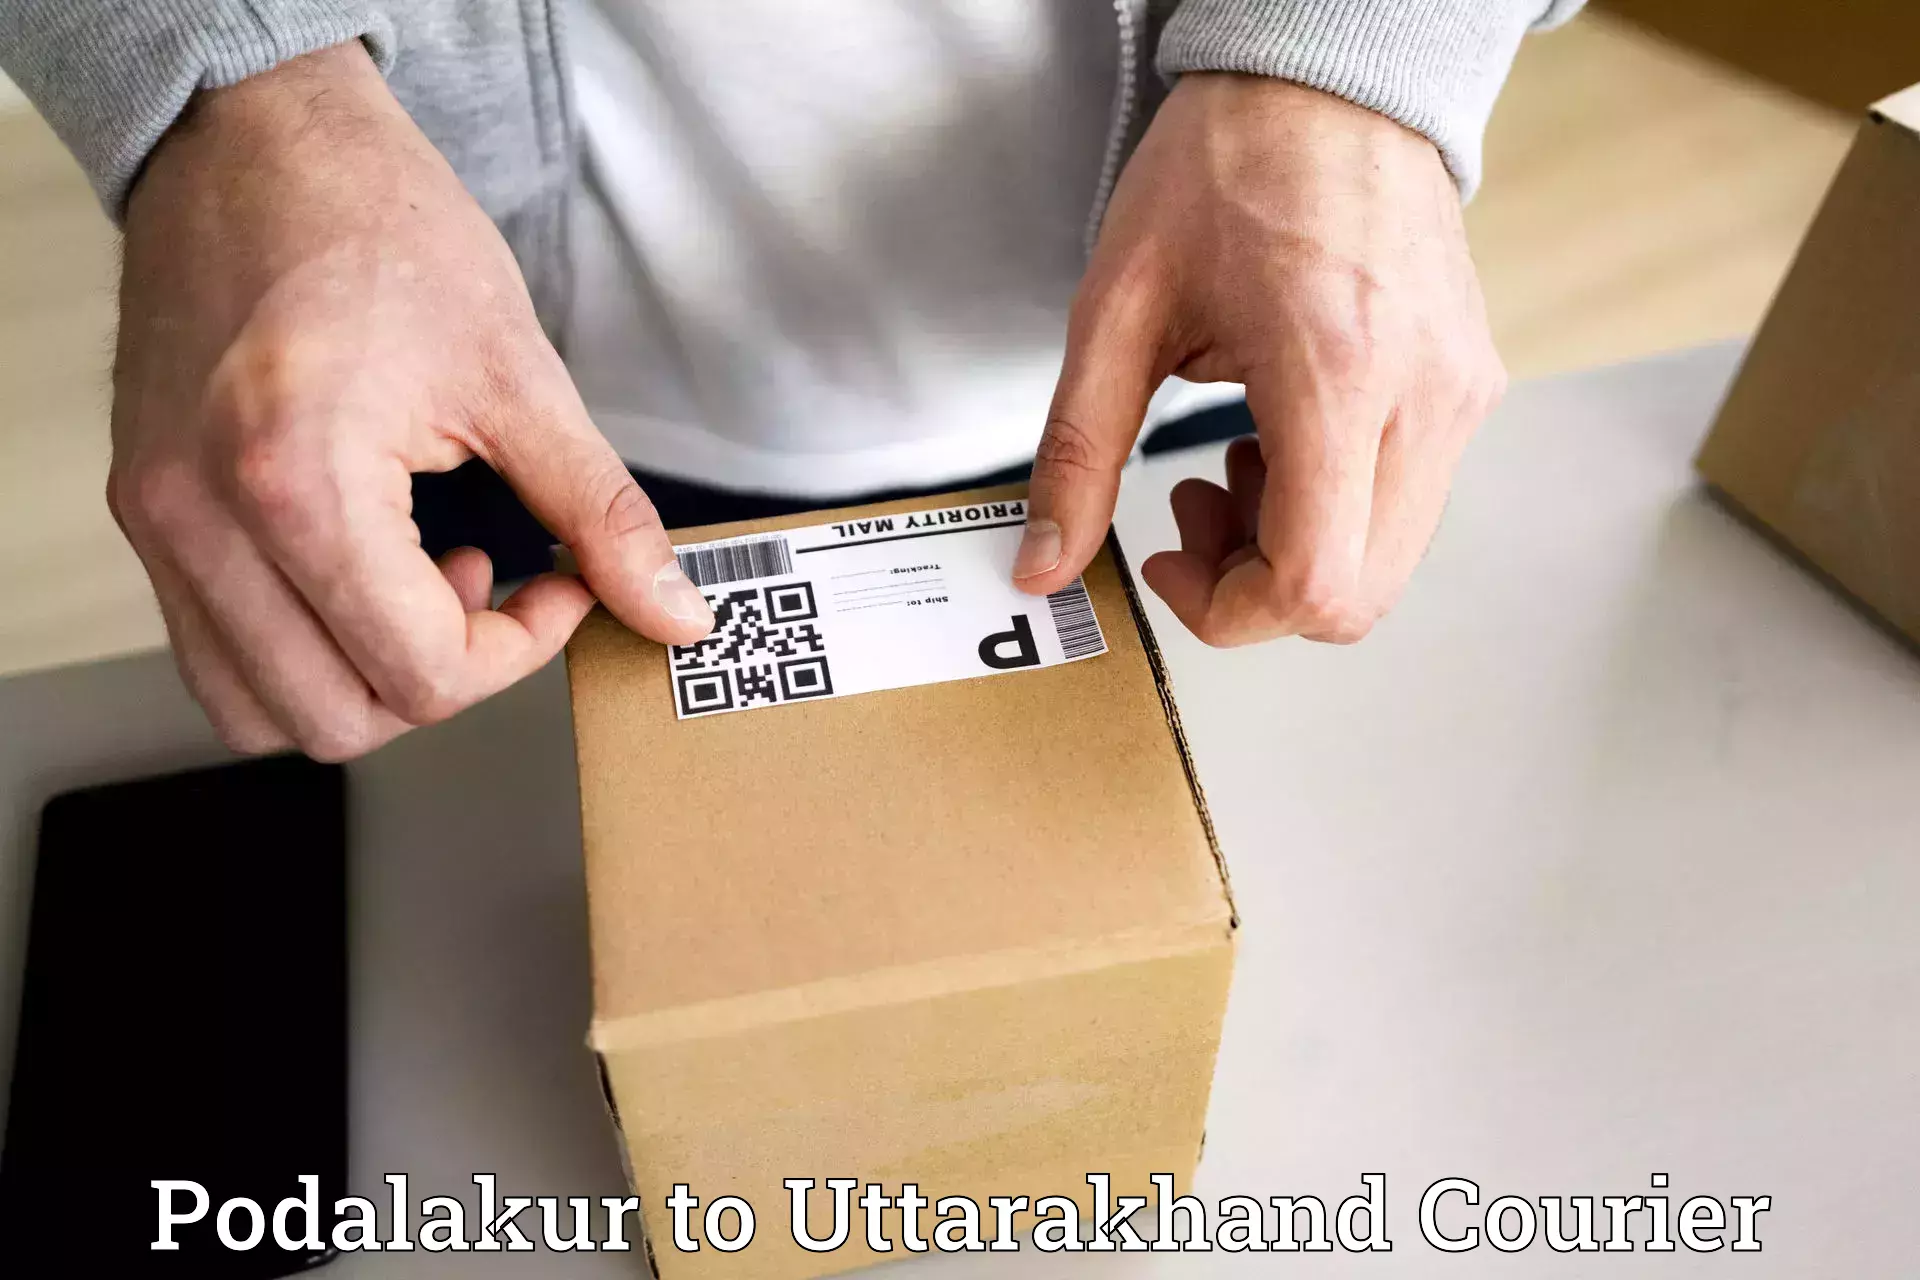 Bulk courier orders Podalakur to Kashipur